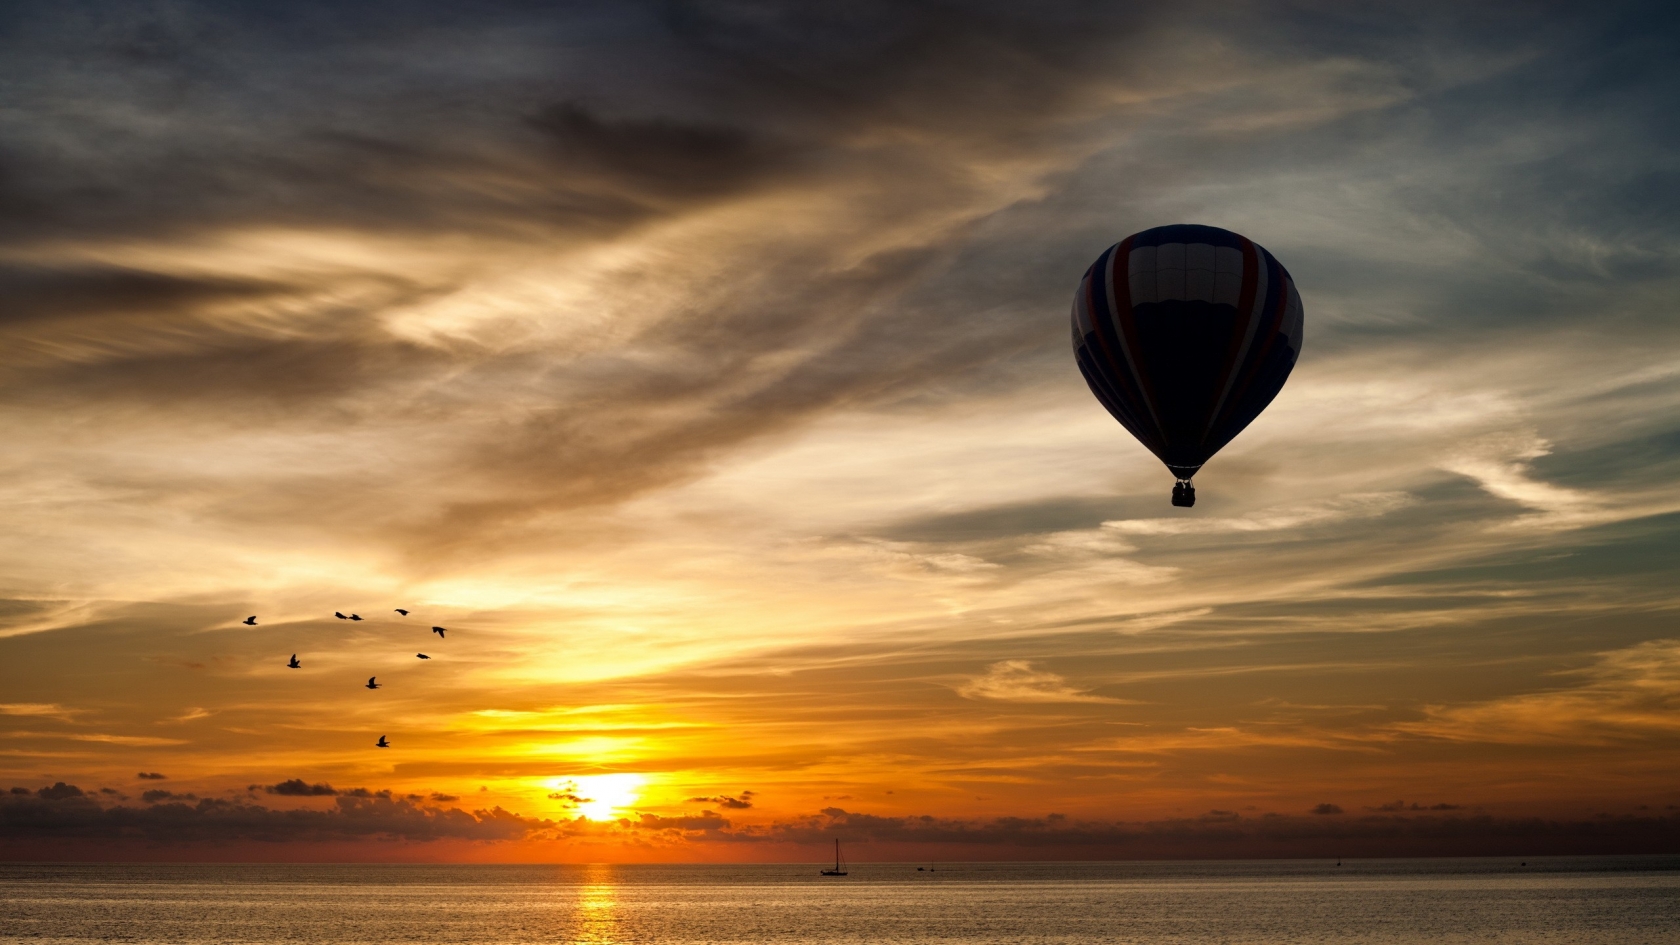 Balloon Towards Sunset for 1680 x 945 HDTV resolution